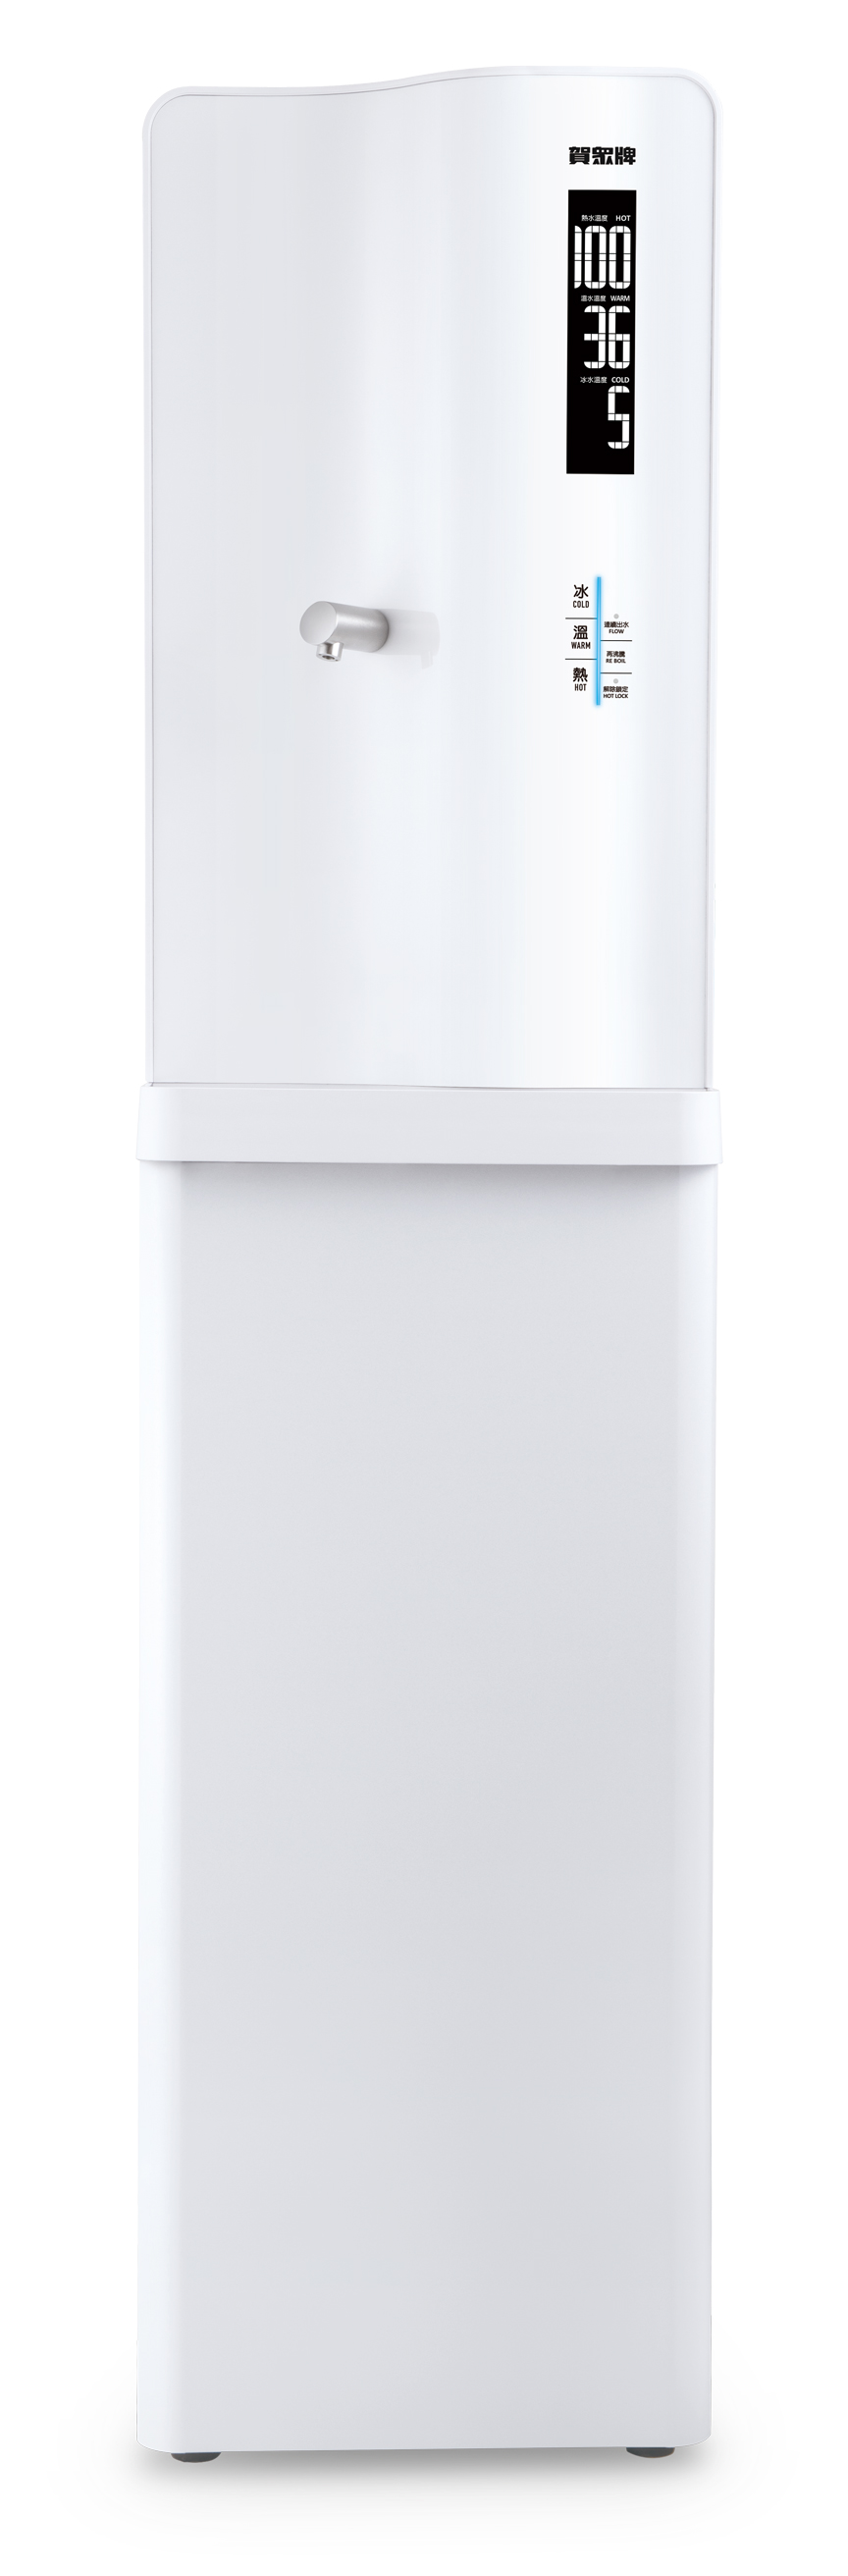 Serenity Computerized Water Dispenser-INNOTRIO CO., LTD.